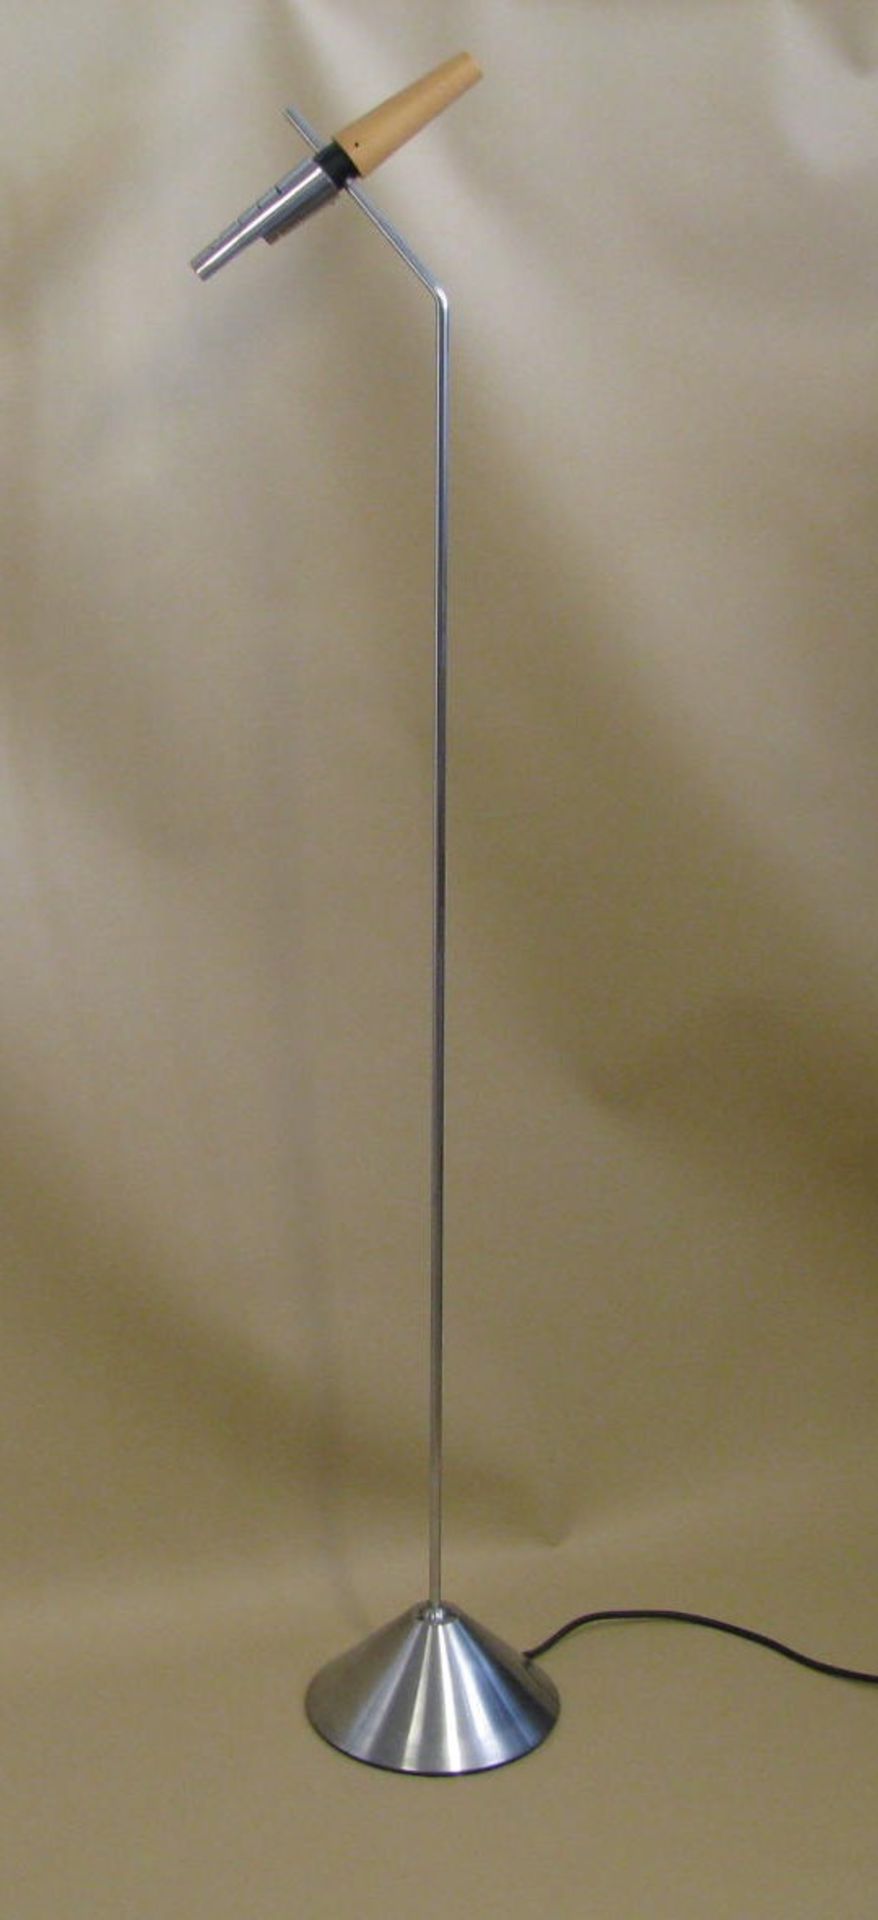 Designer-Stehlampe, 1970er Jahre, Memphis-Stil, Edelstahl und Holz, h 140 cm, Standfuß d 23 cm.